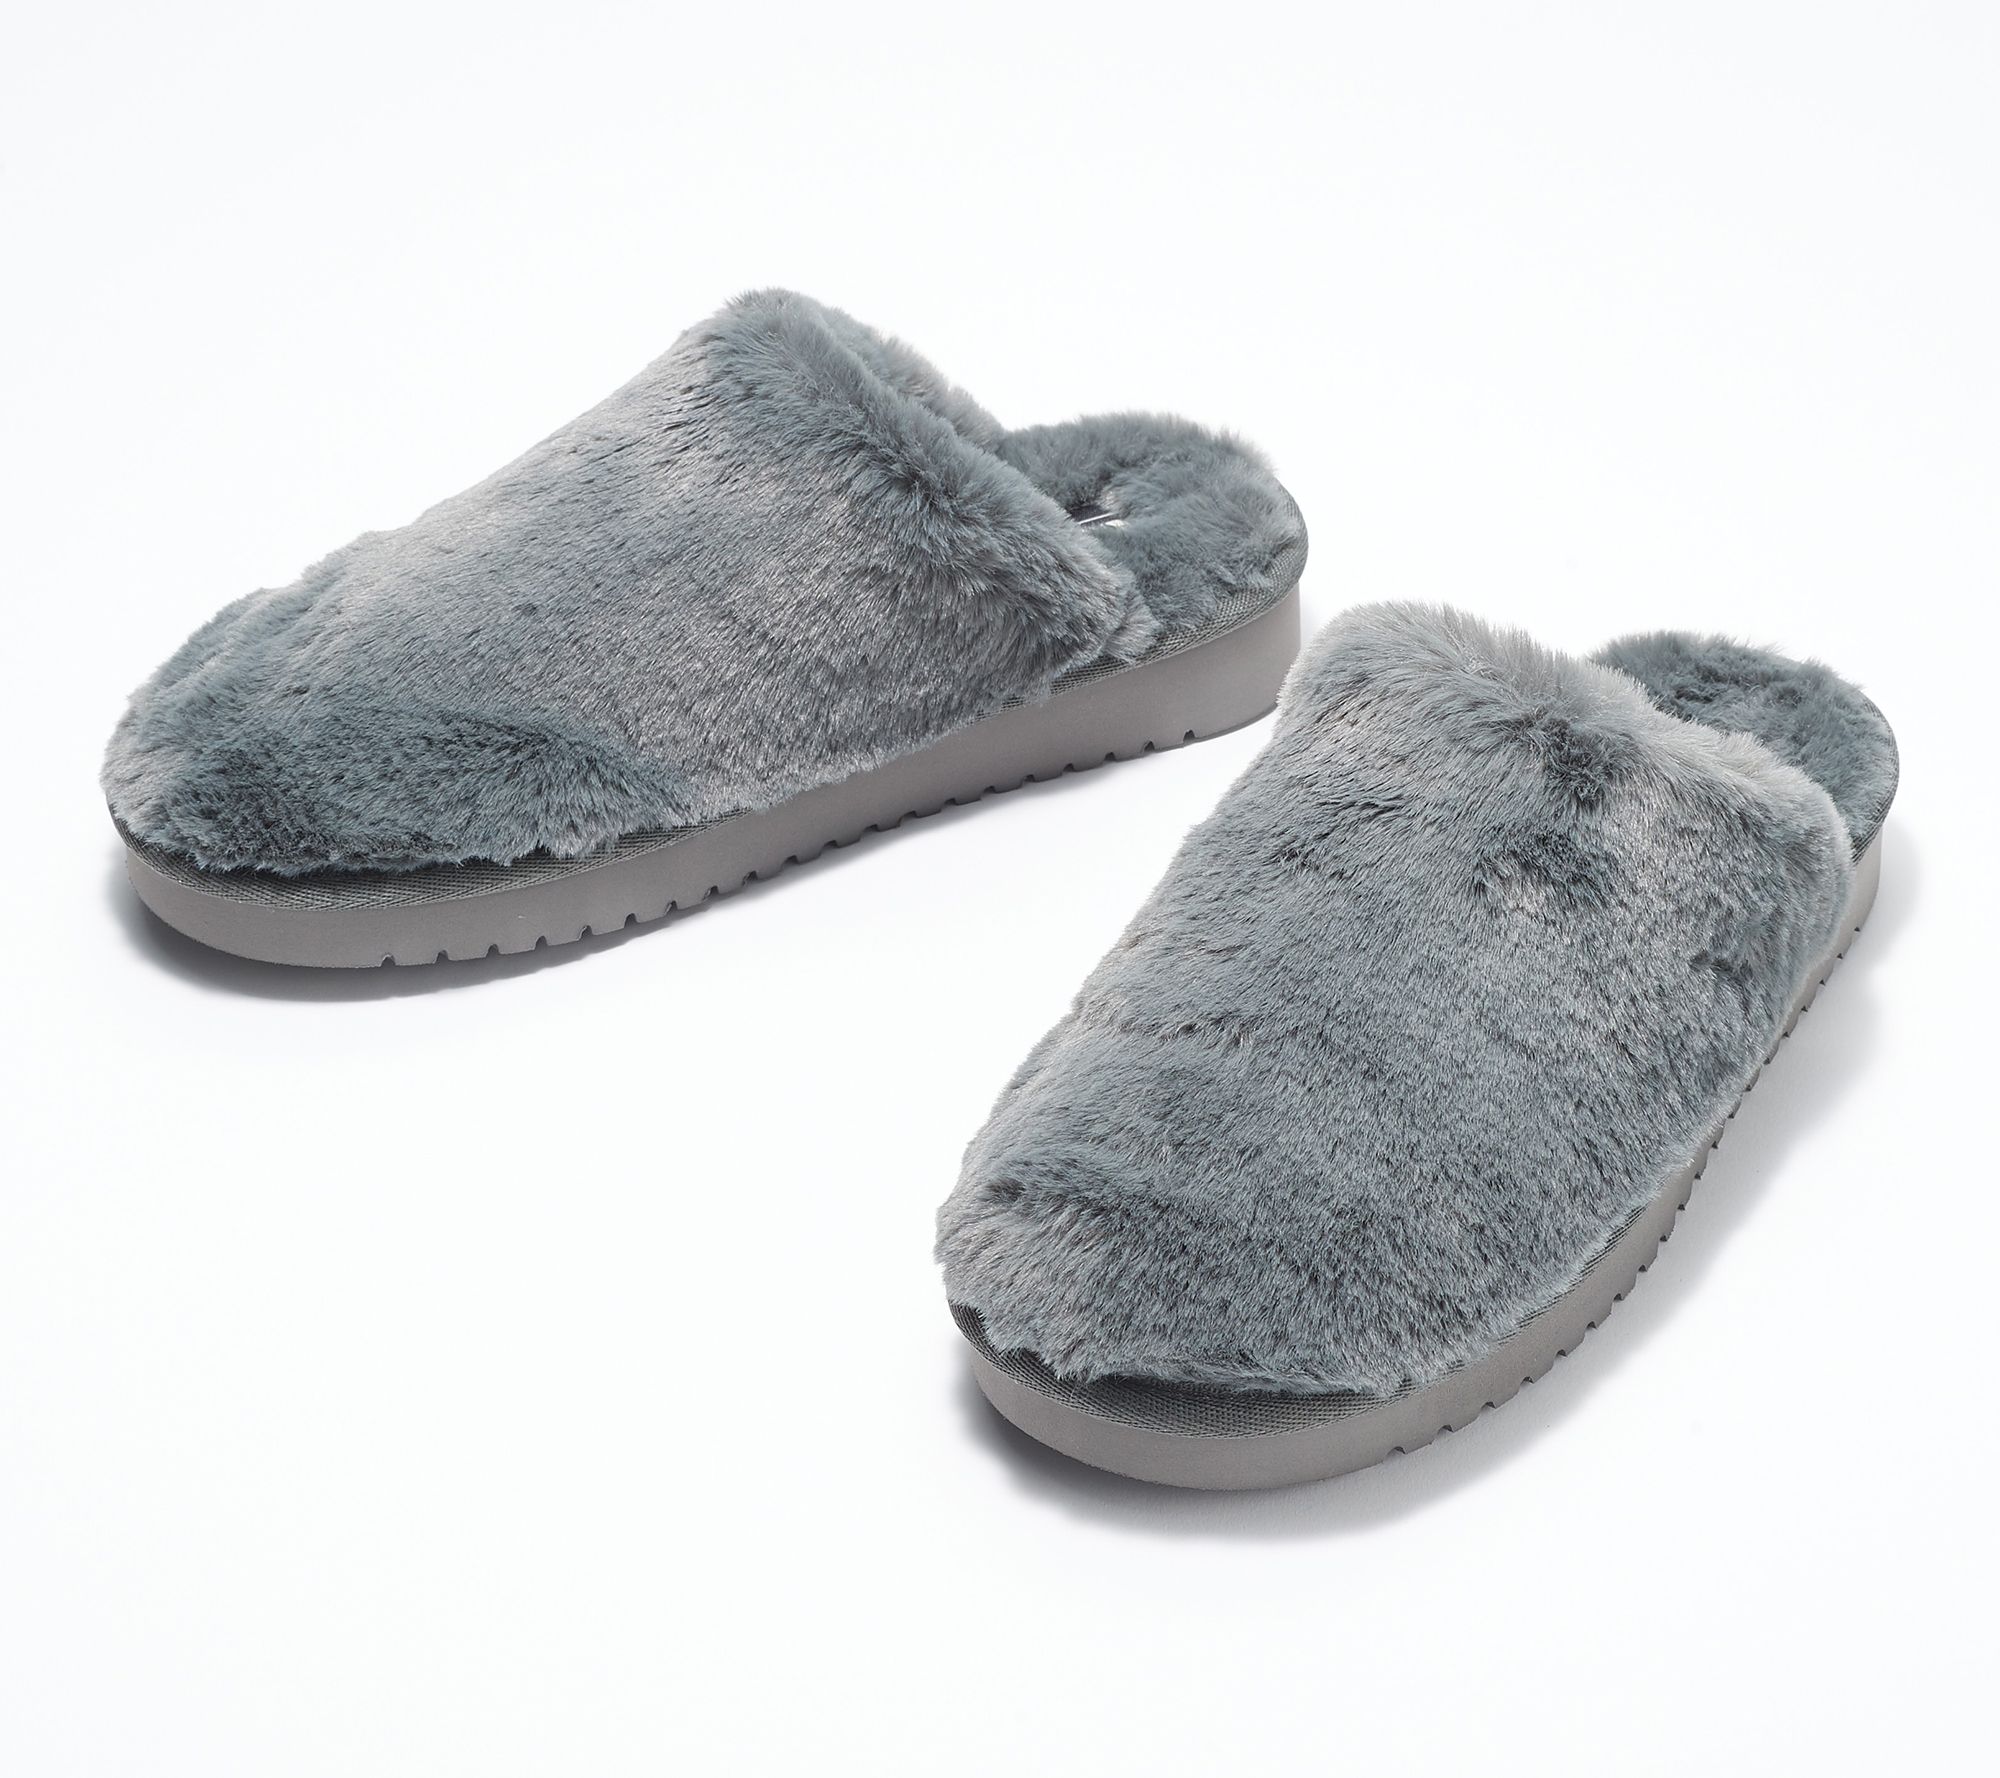 uggs koolaburra slippers